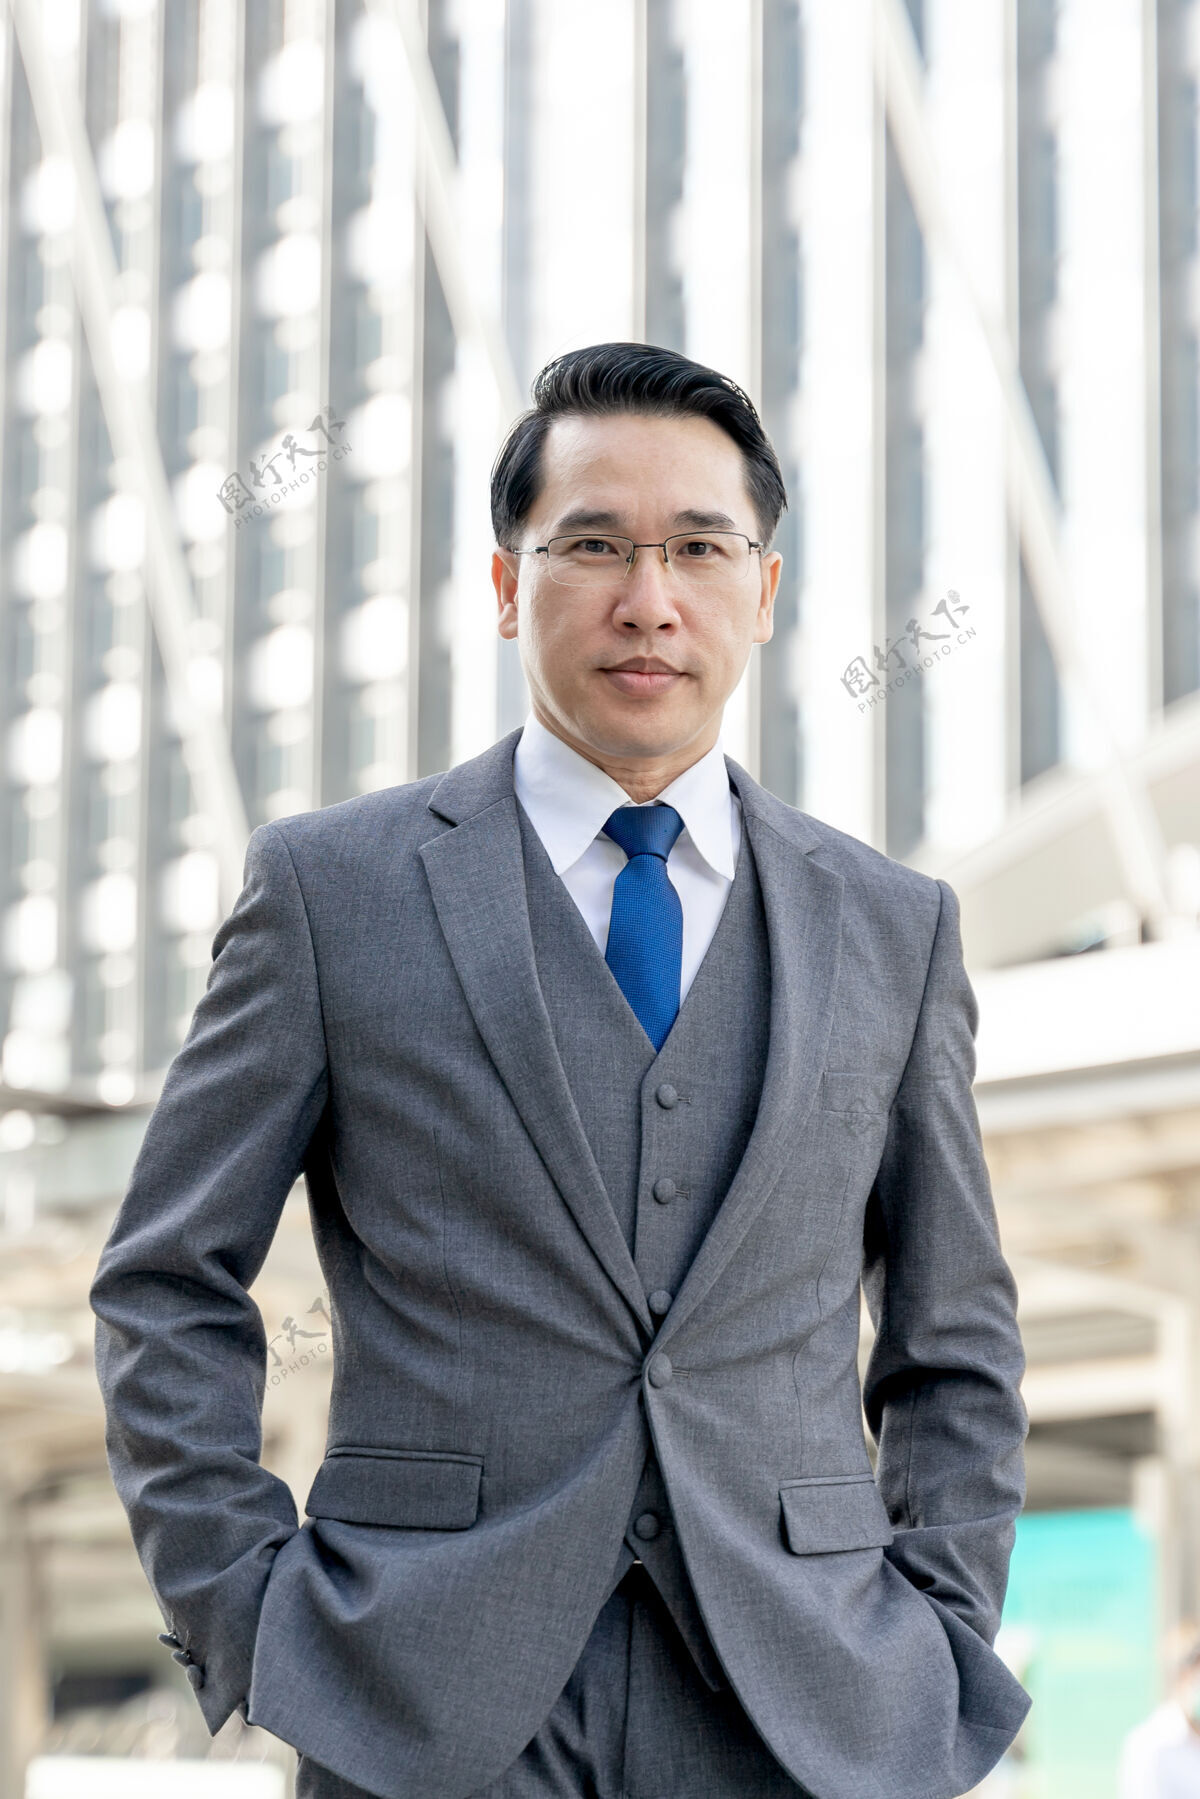 公司肖像亚洲商务人士商务区 高级有远见的行政领导与商业愿景-生活方式的商务人士的概念高管商人专业